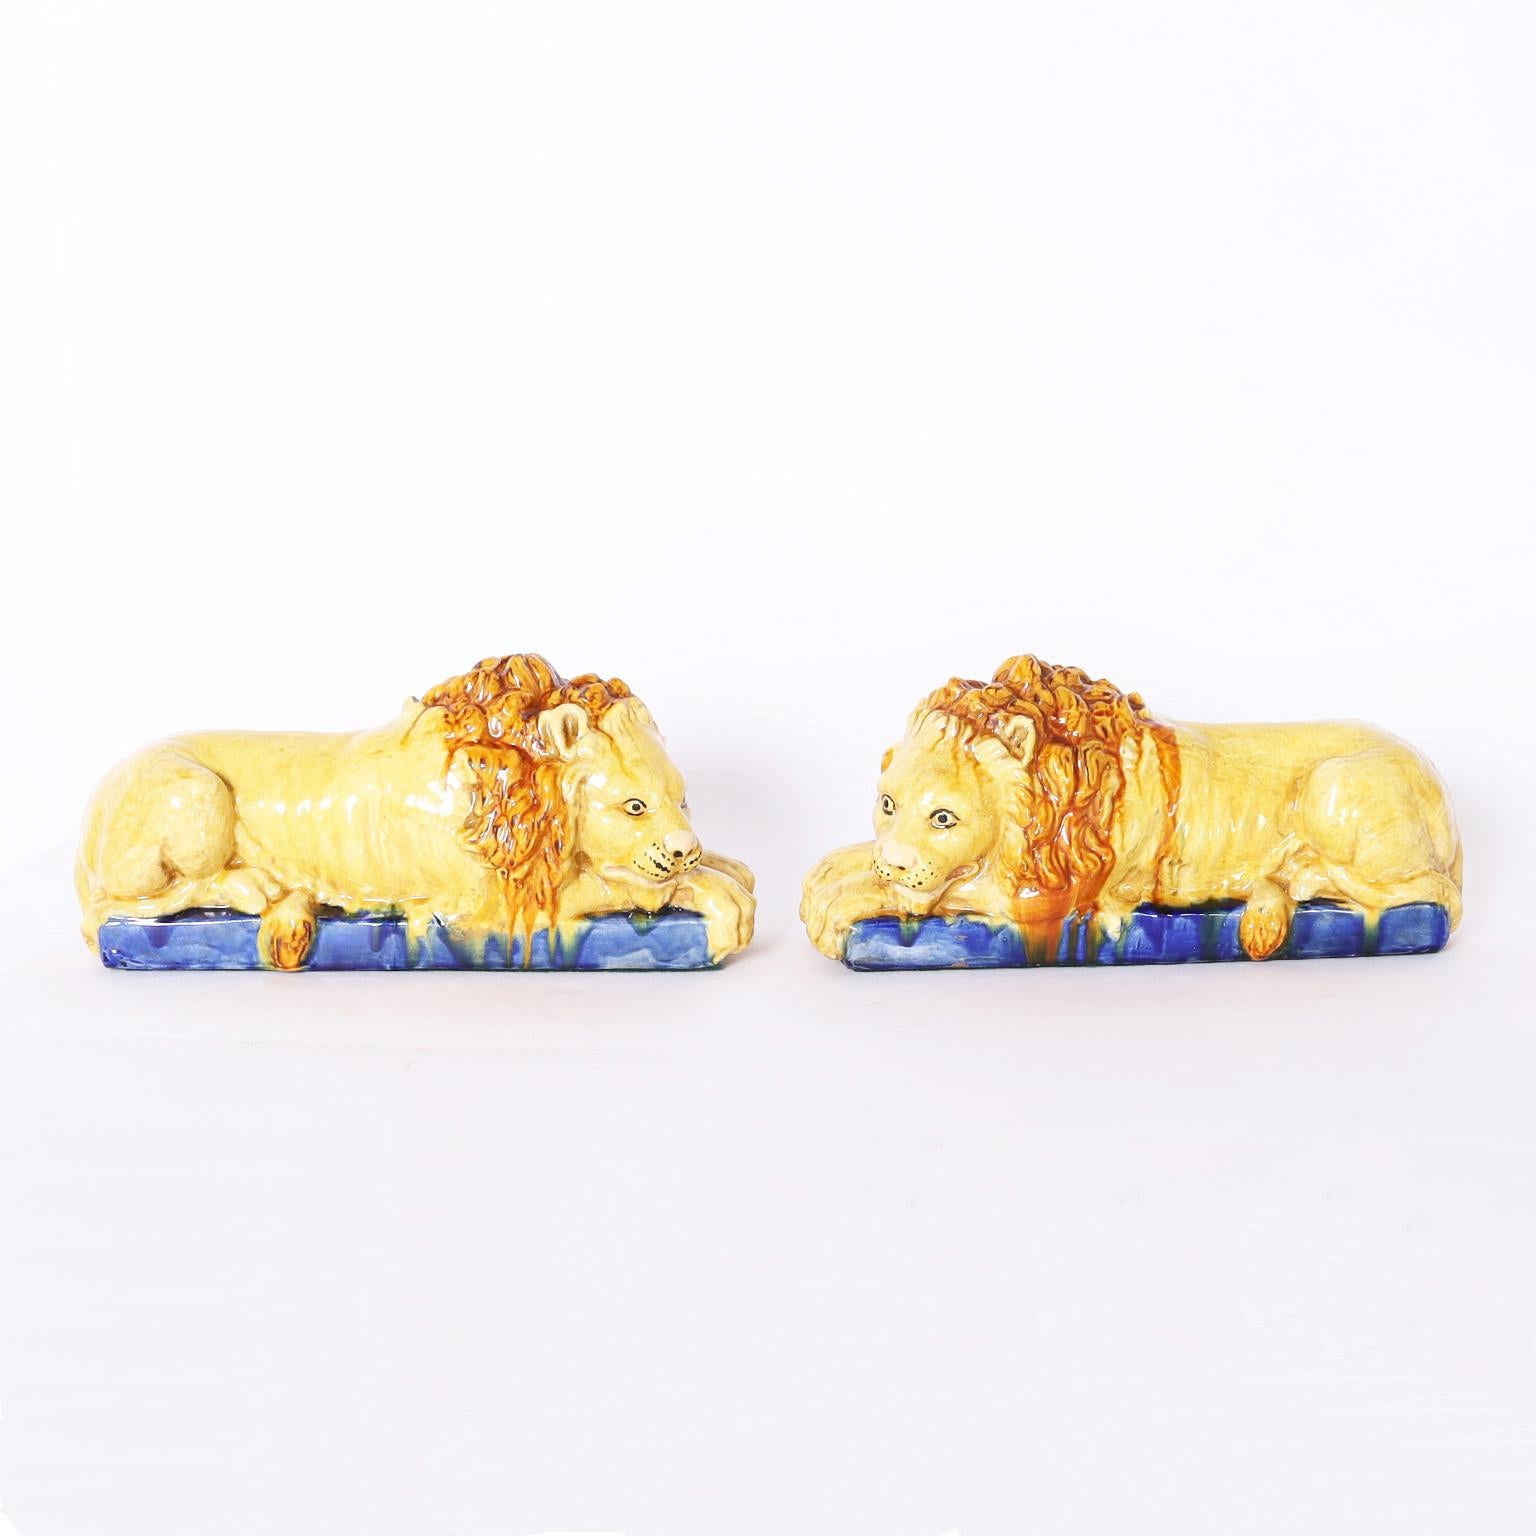 Ancienne paire de lions italiens véritables en terre cuite, décorées, émaillées et pour toujours en repos.